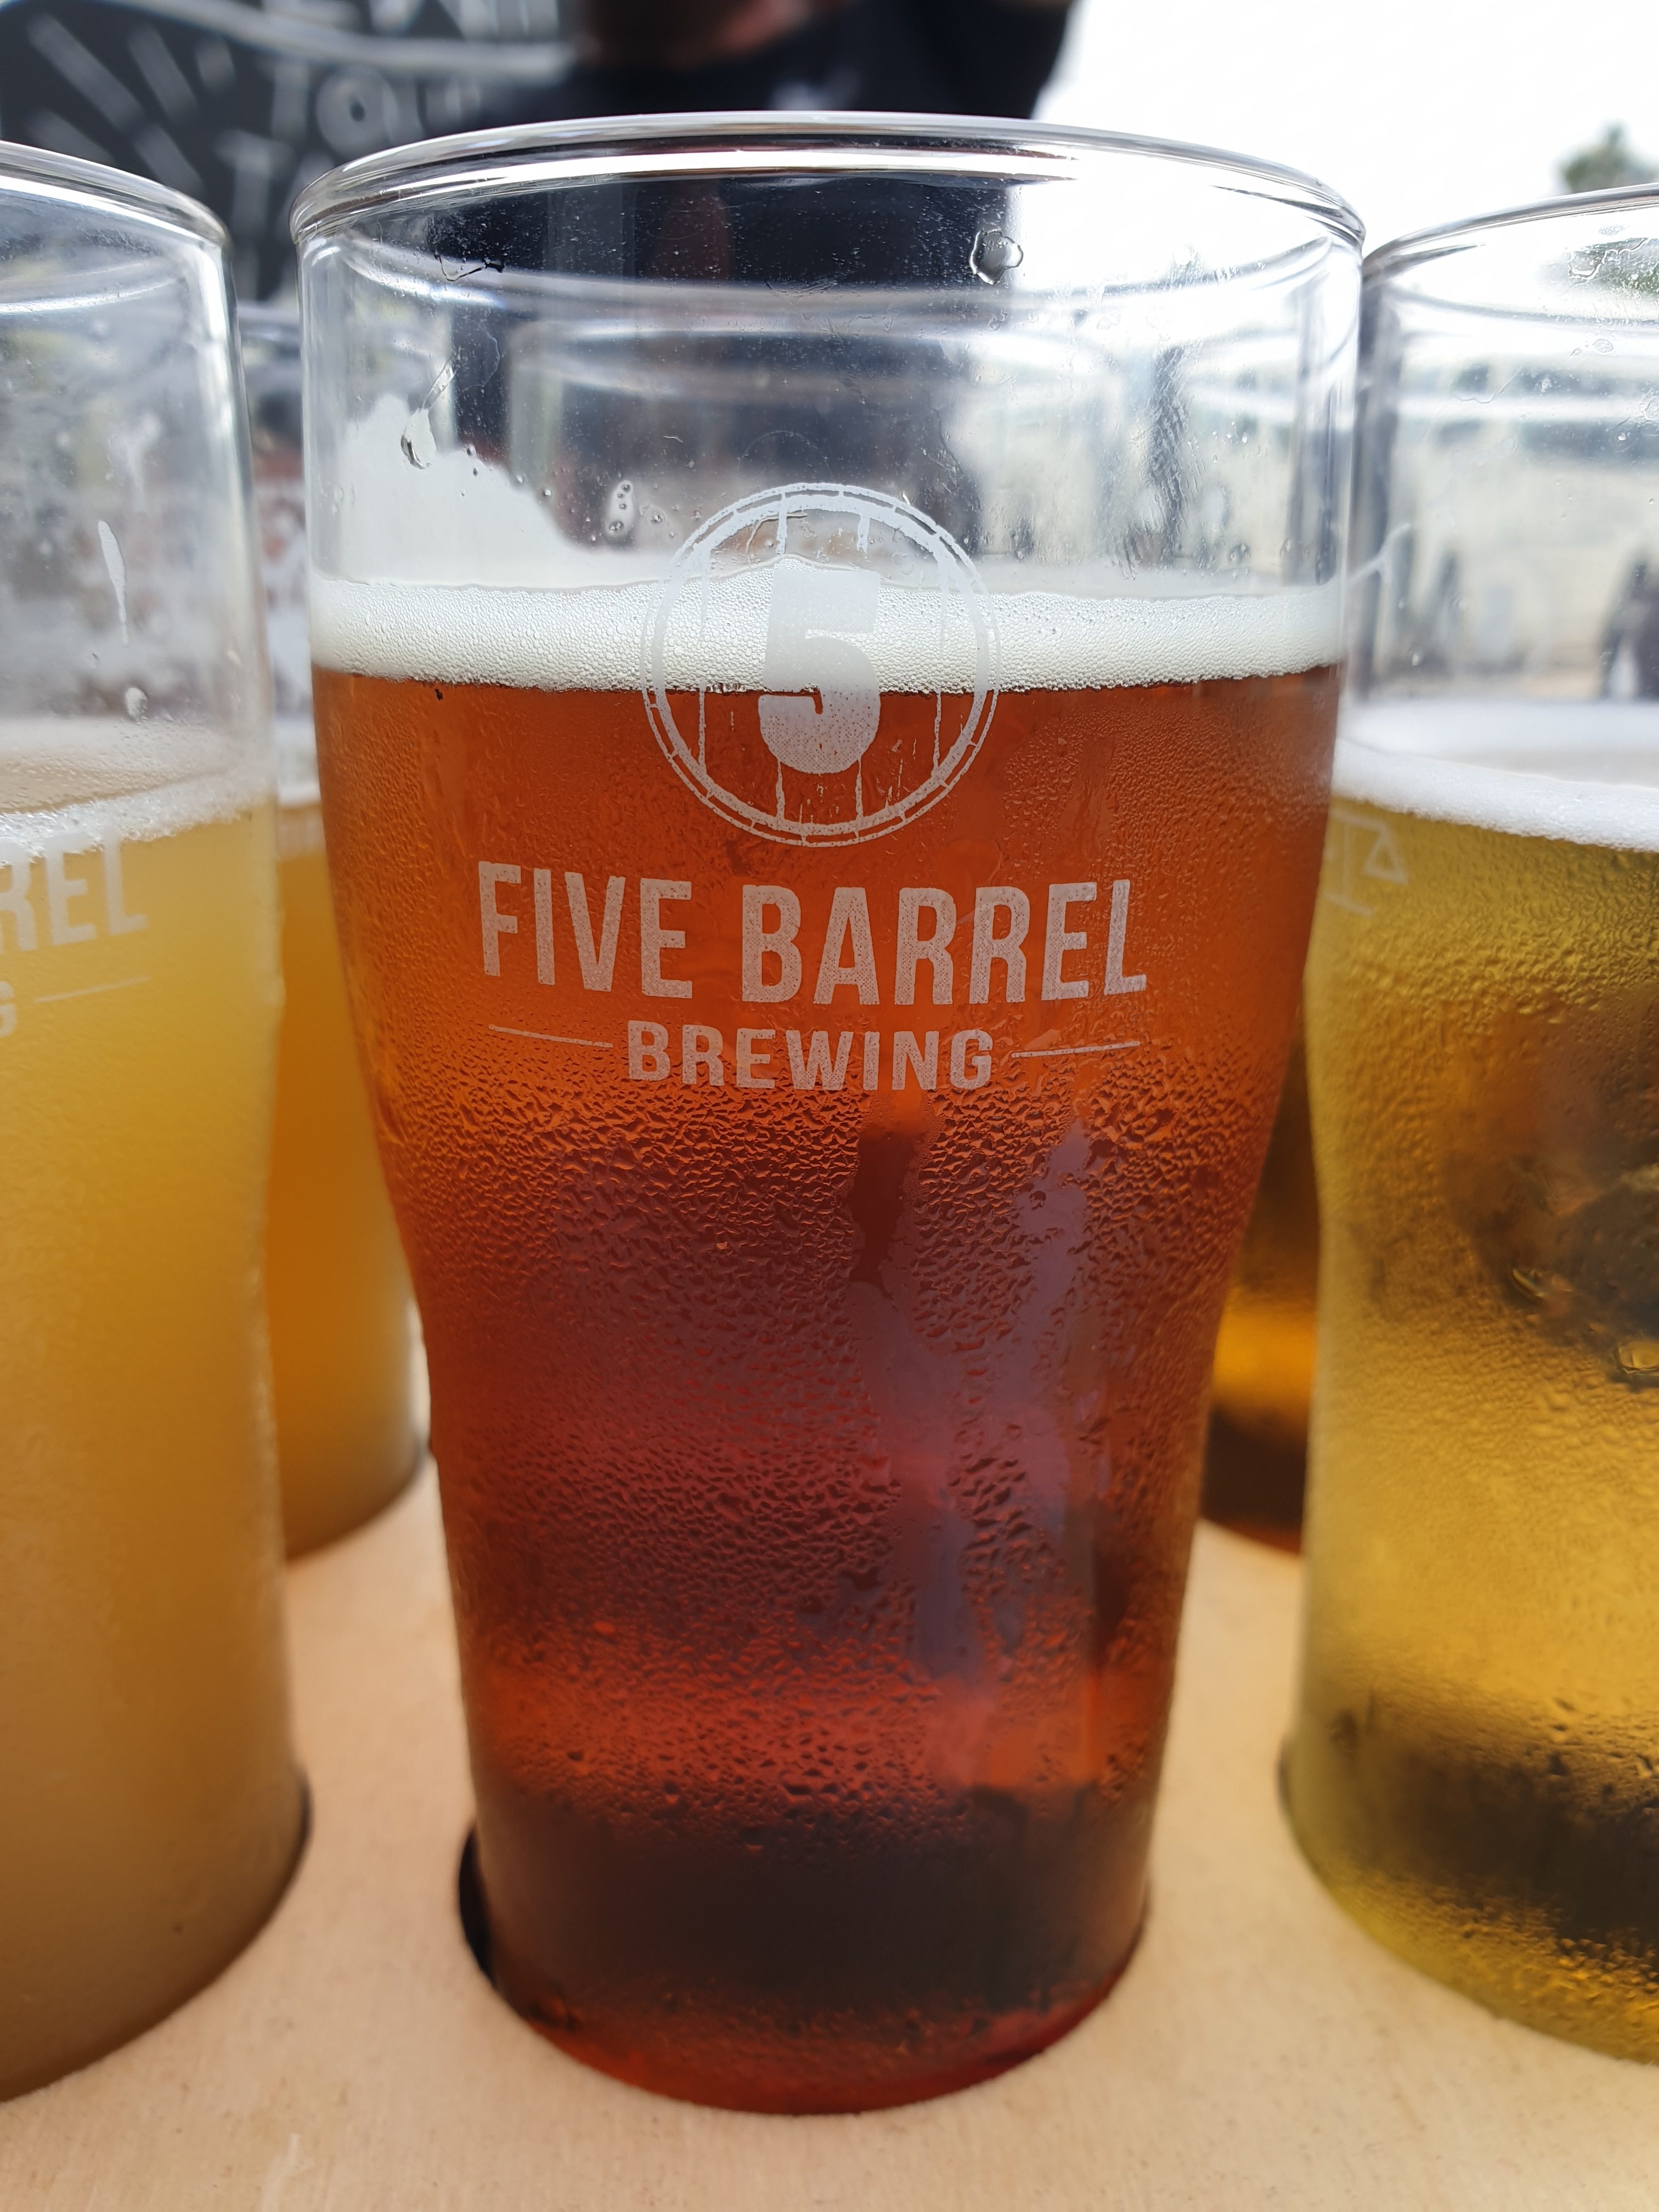 Five Barrel Brewing